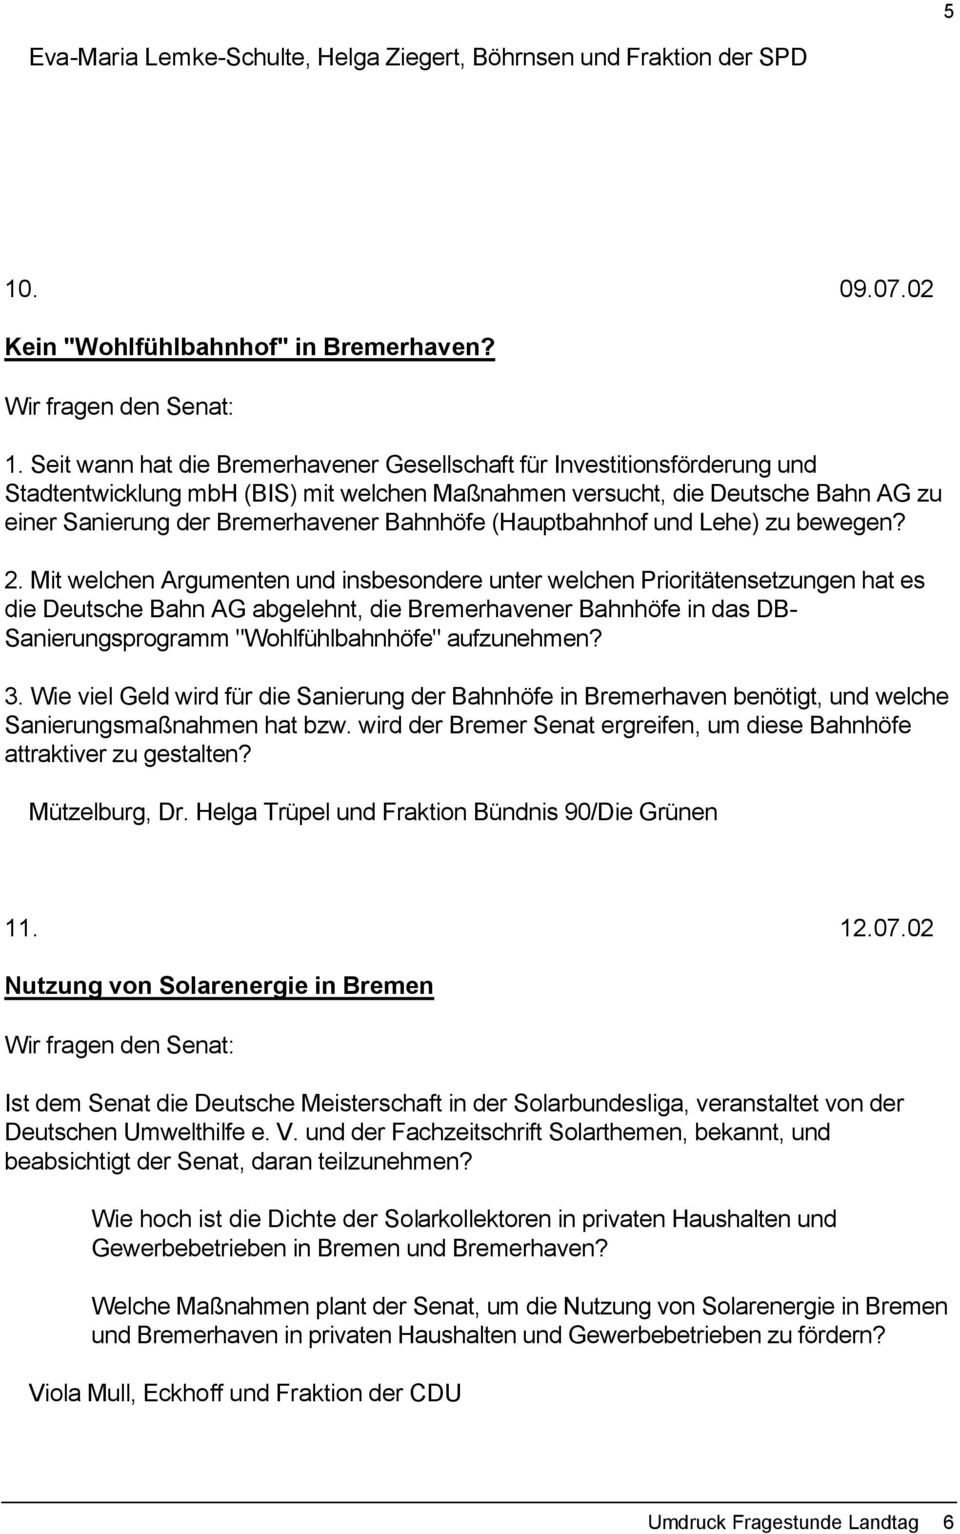 Seit wann hat die Bremerhavener Gesellschaft für Investitionsförderung und Stadtentwicklung mbh (BIS) mit welchen Maßnahmen versucht, die Deutsche Bahn AG zu einer Sanierung der Bremerhavener